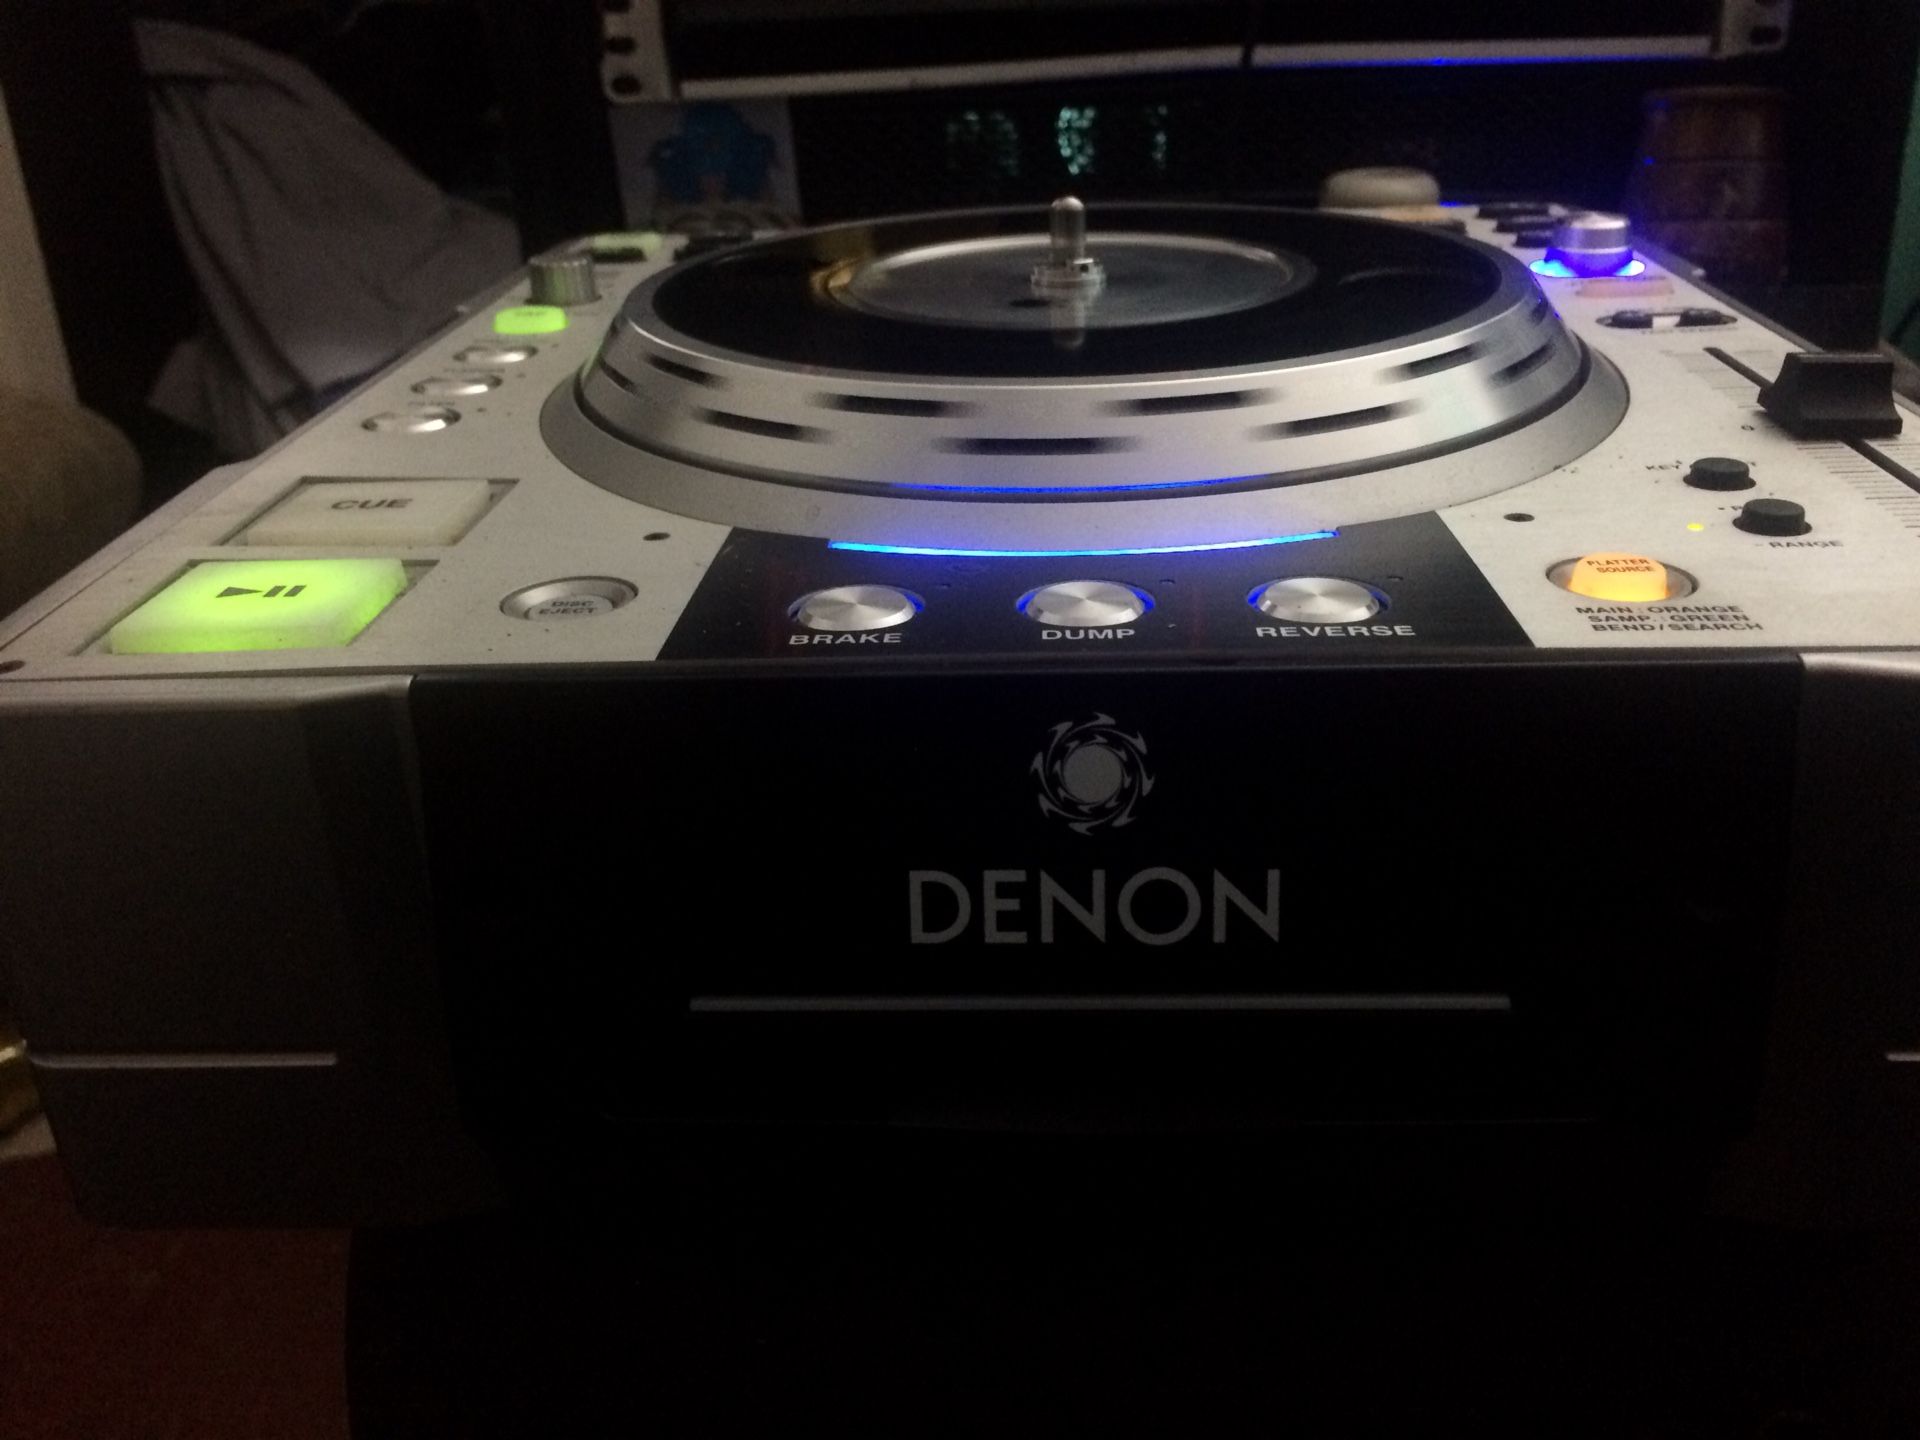 Demon s-3500 cd/mixers